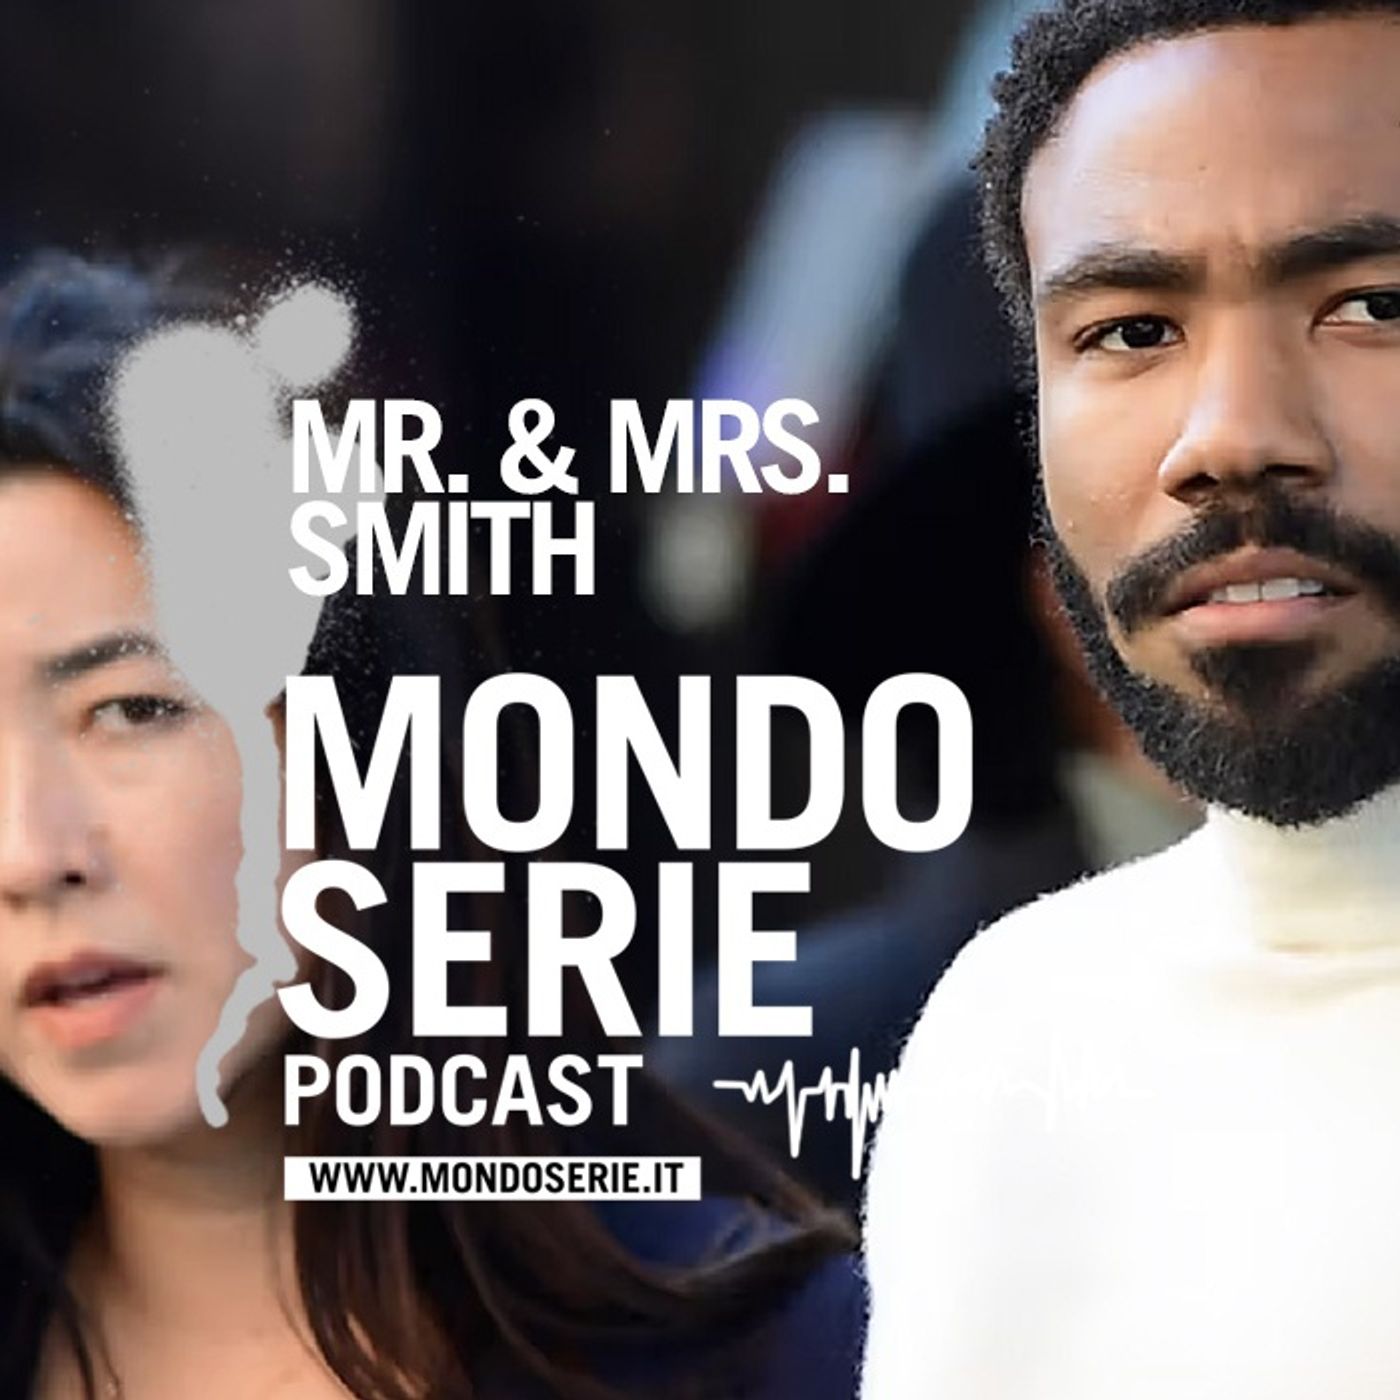 Mr & Mrs Smith, la trappola più mortale è il matrimonio | 5 minuti 1 serie